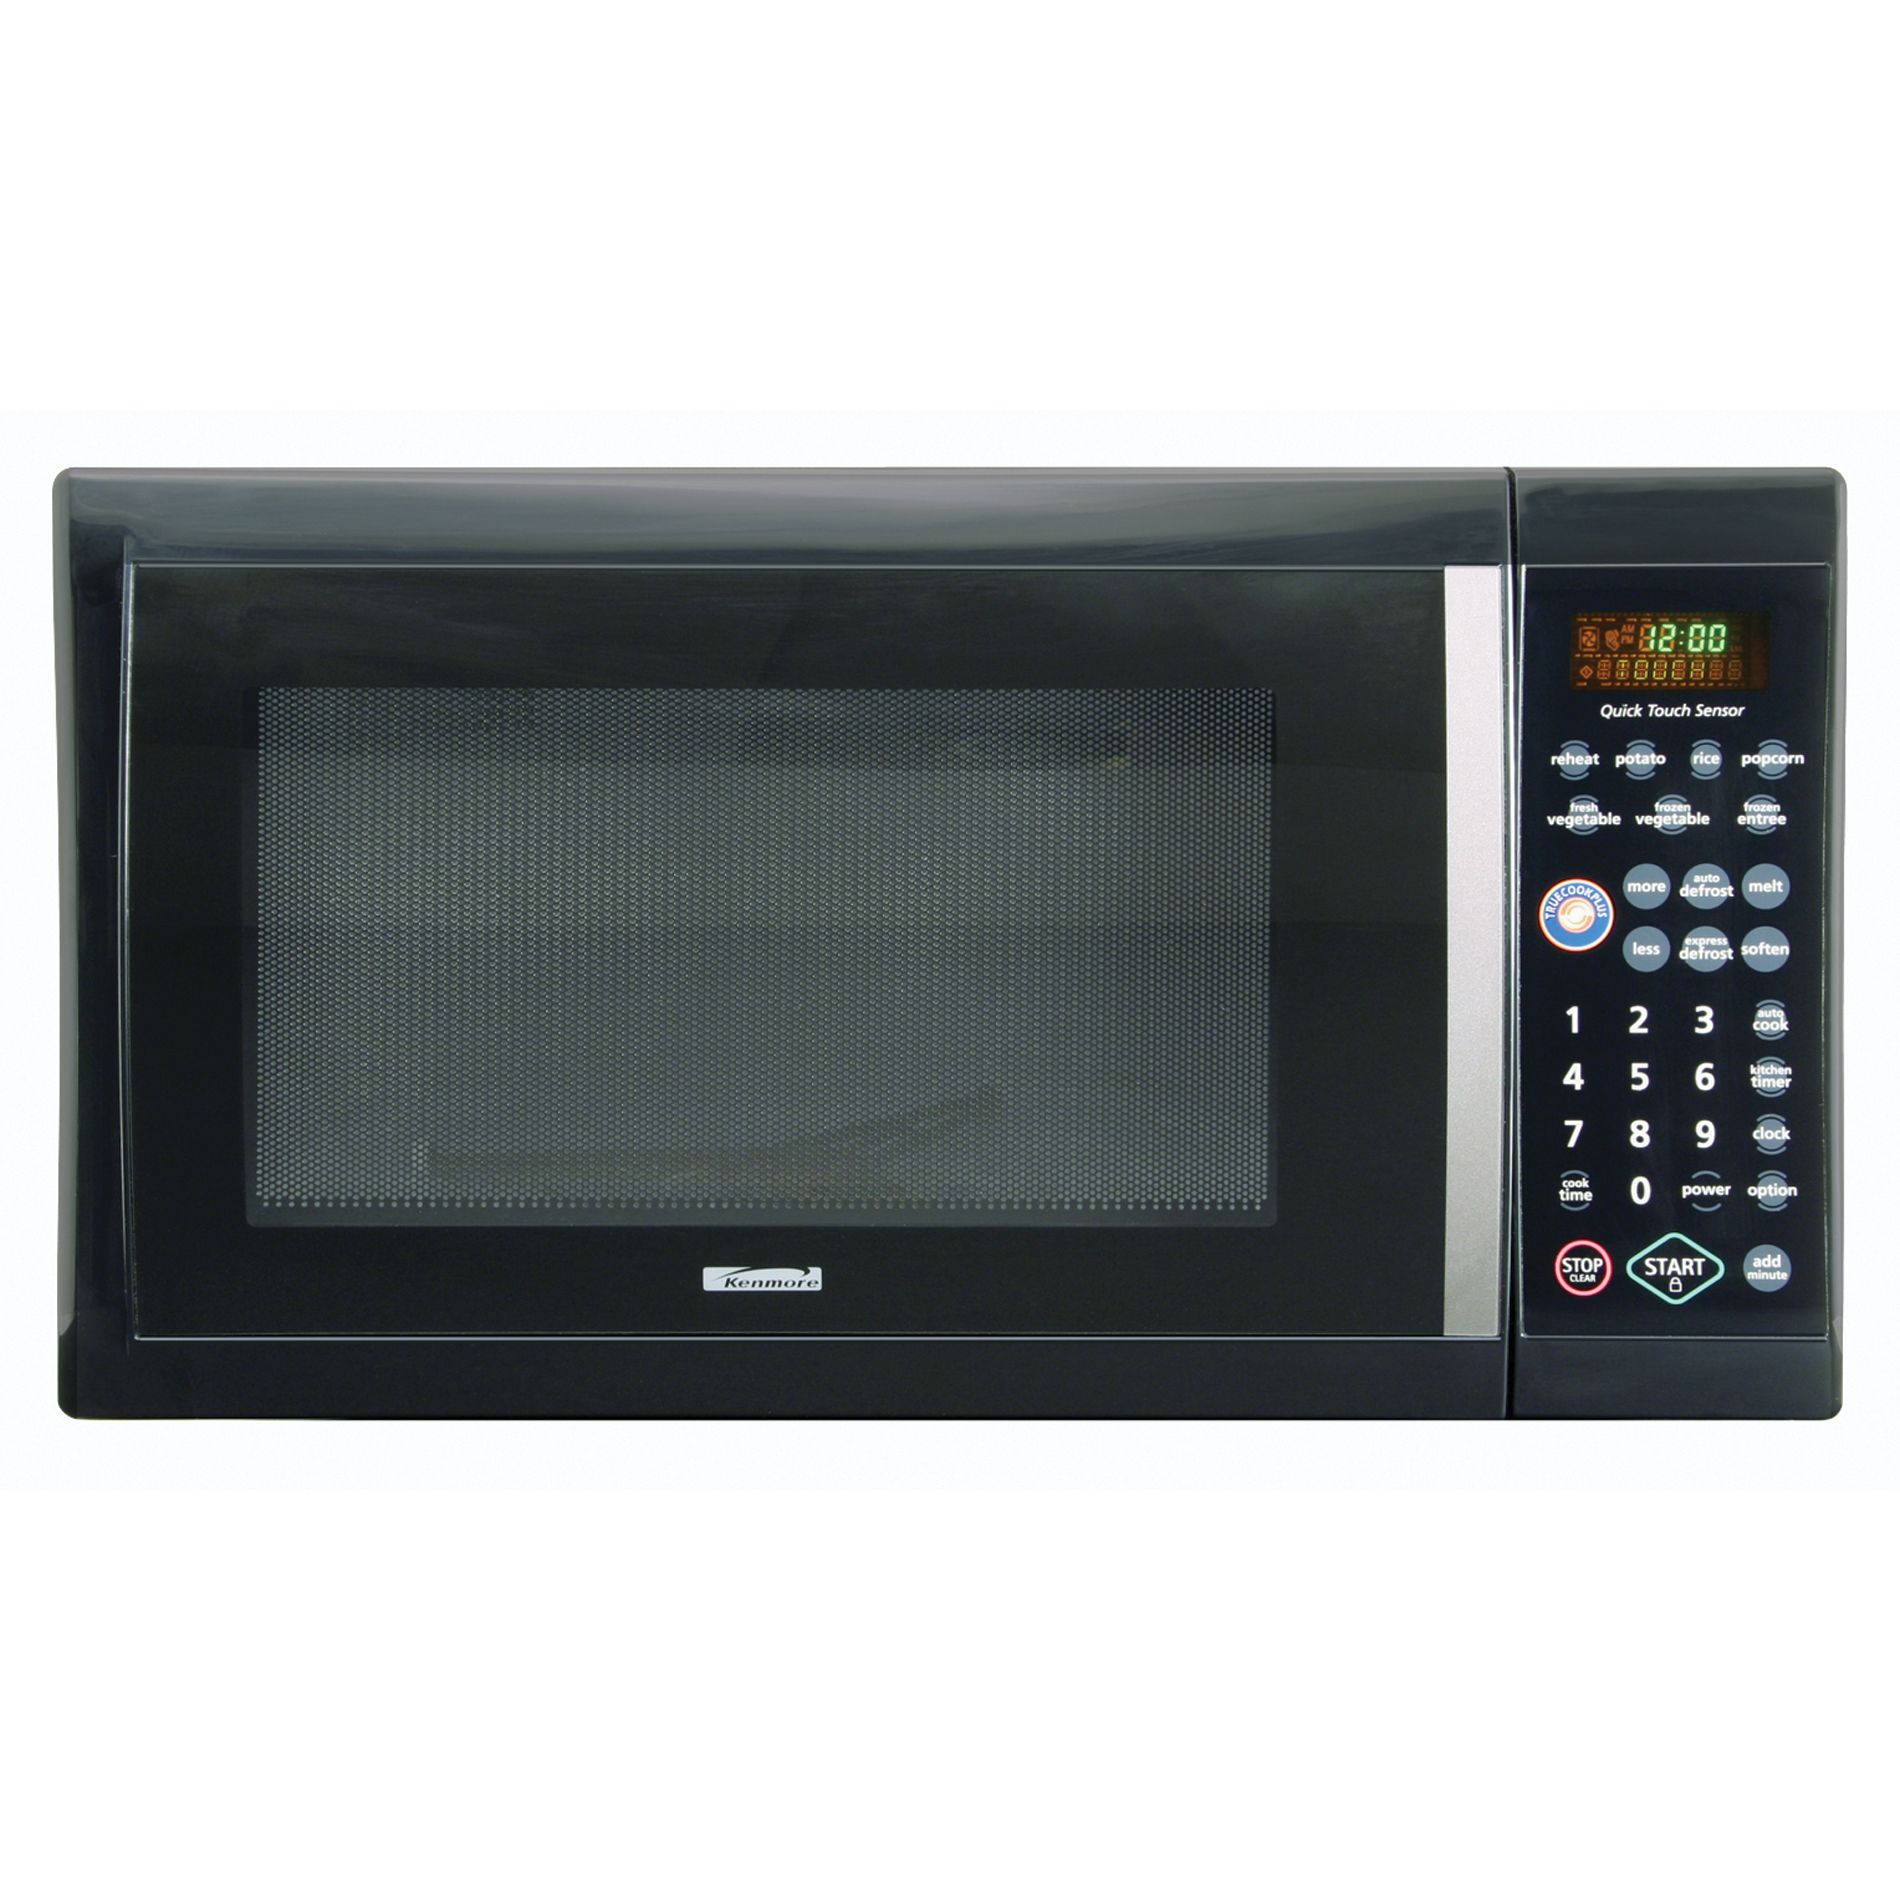 Kenmore 1.2 cu. ft. TrueCookPlus Countertop Microwave Oven | Shop Your